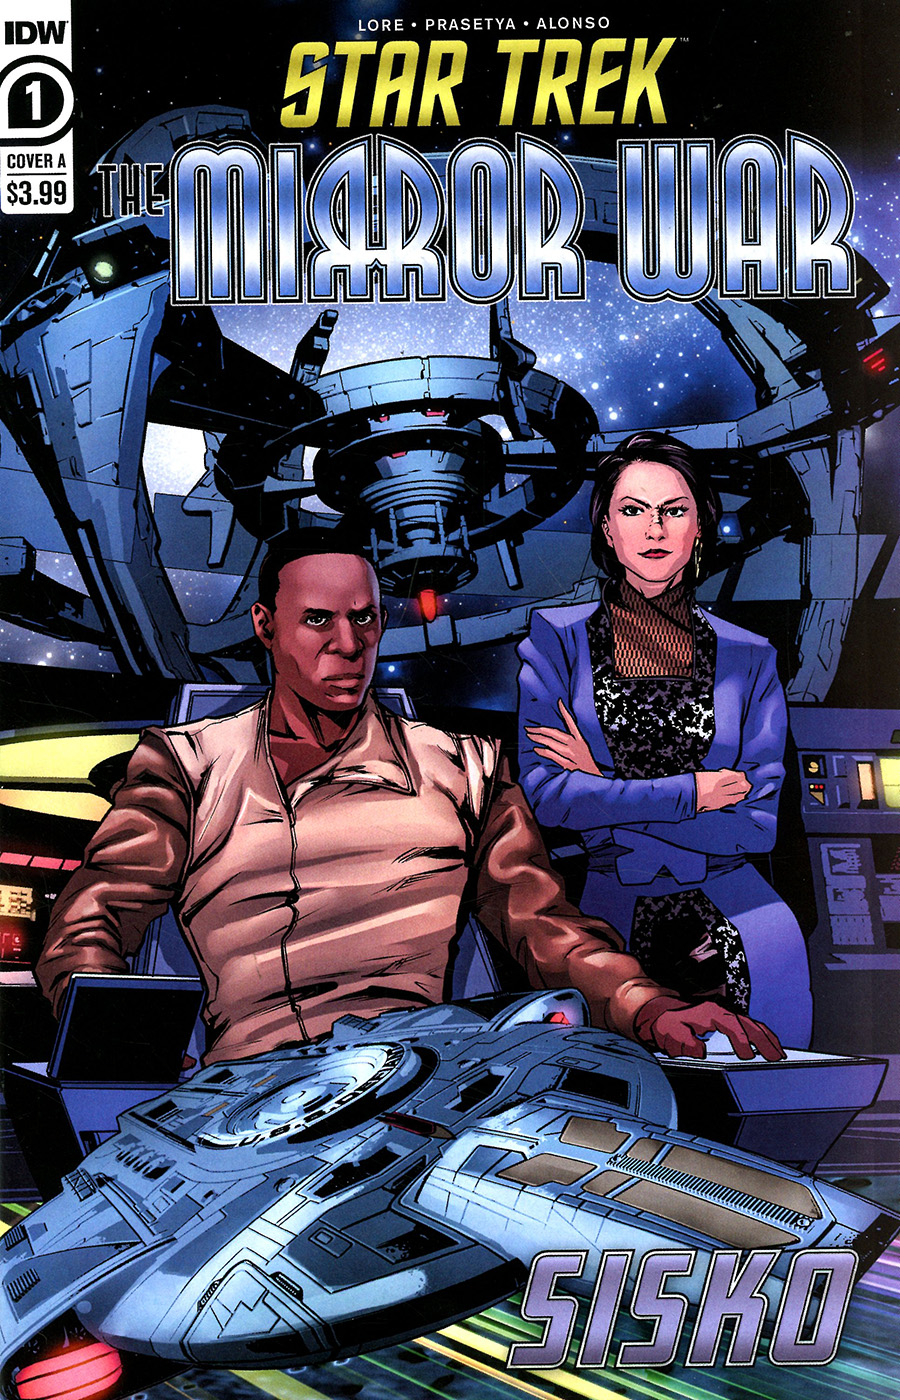 Star Trek The Mirror War Sisko #1 (One Shot) Cover A Regular Hendry Prasetya Cover